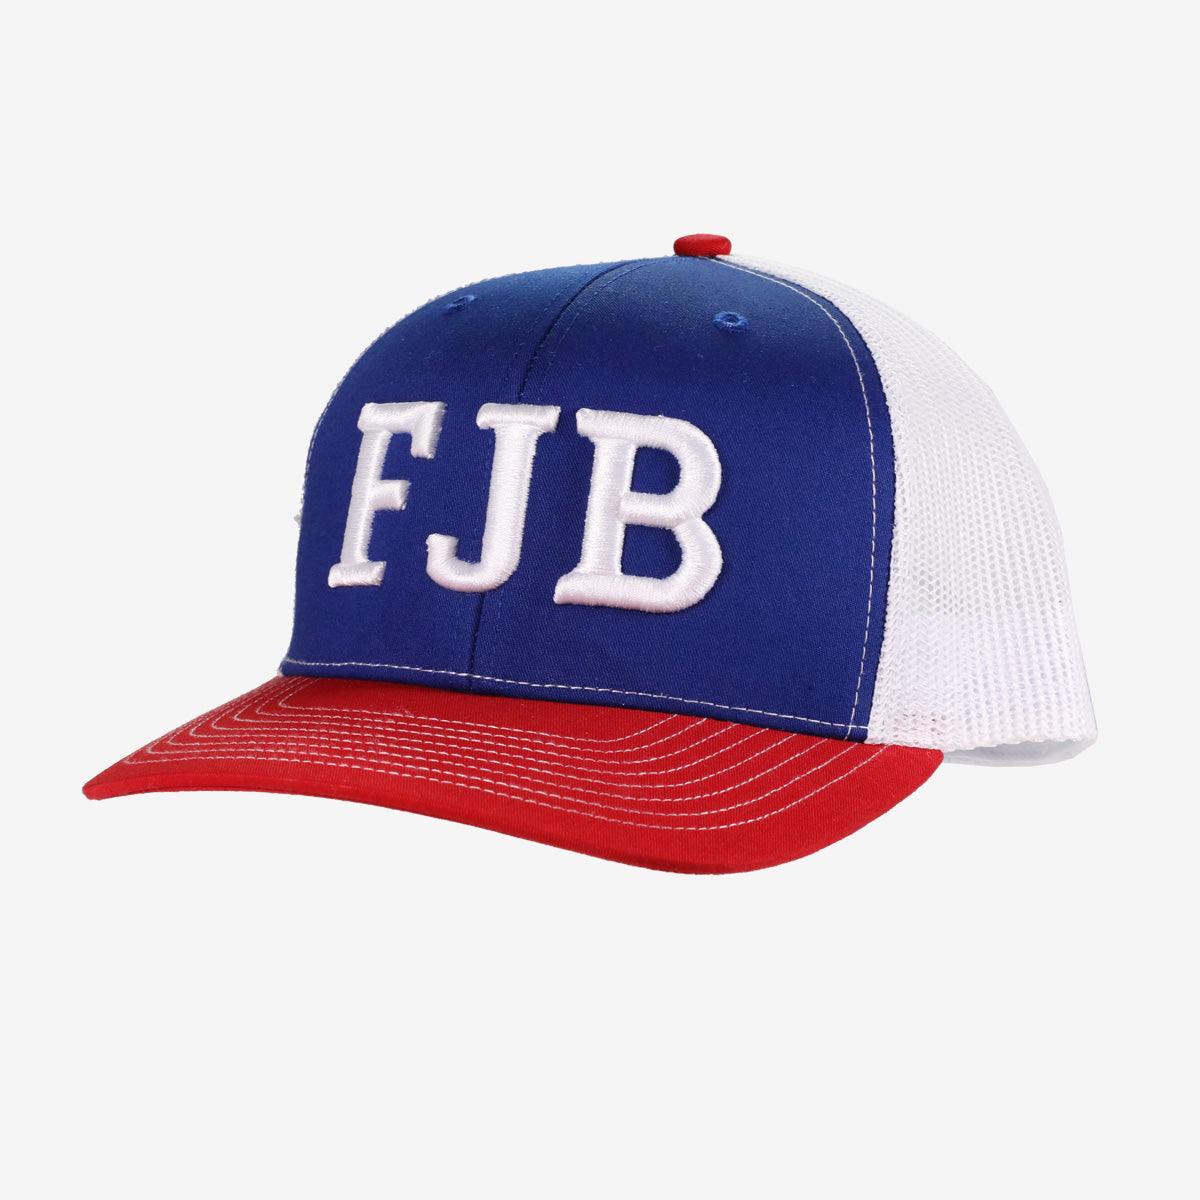 FJB Red, White & Blue Trucker Hat